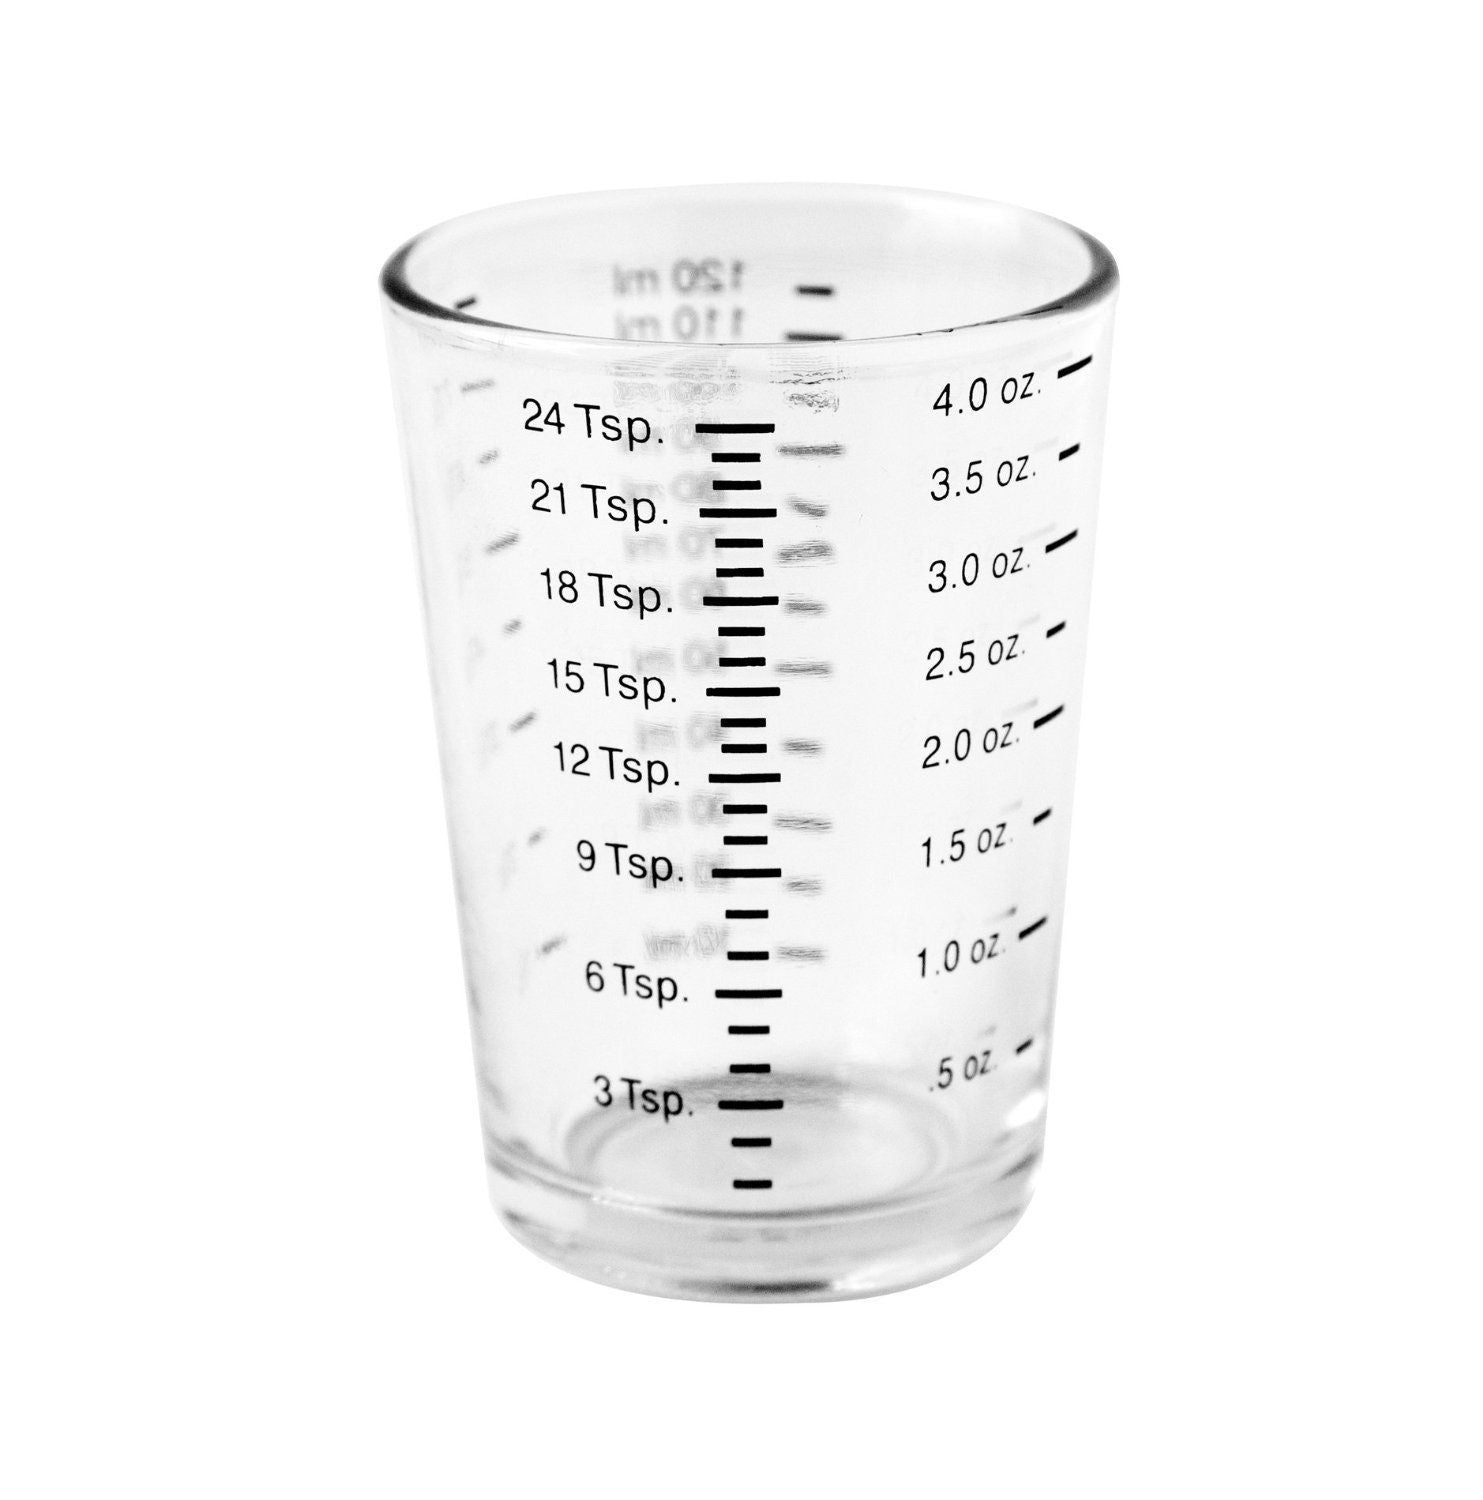 Measuring Cup - 4 oz